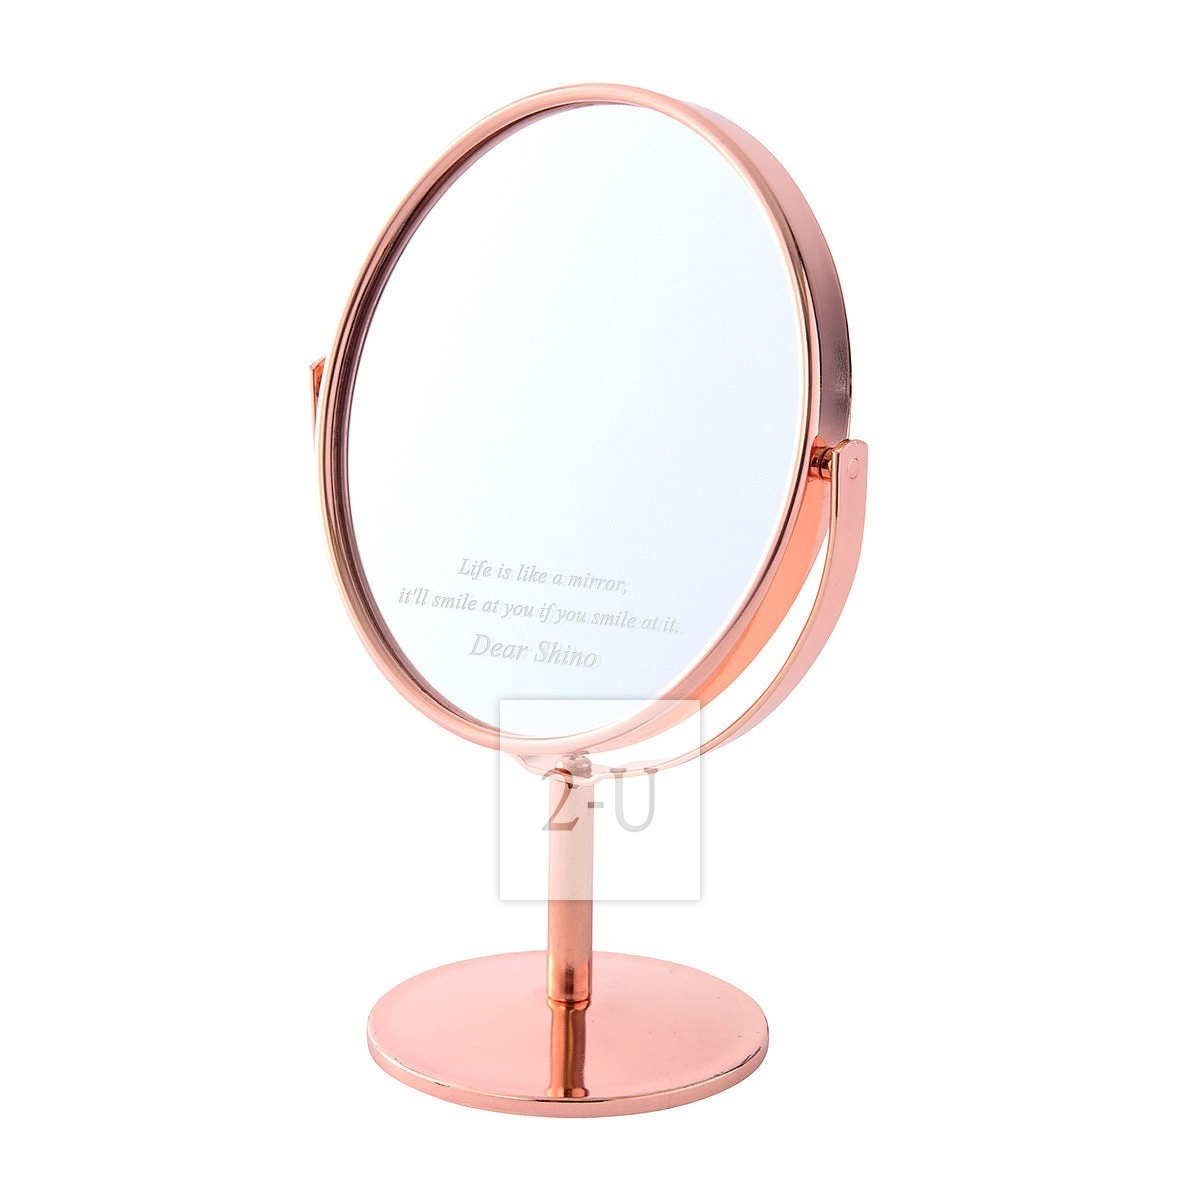 圓形鏡子化妝鏡 粉紅色